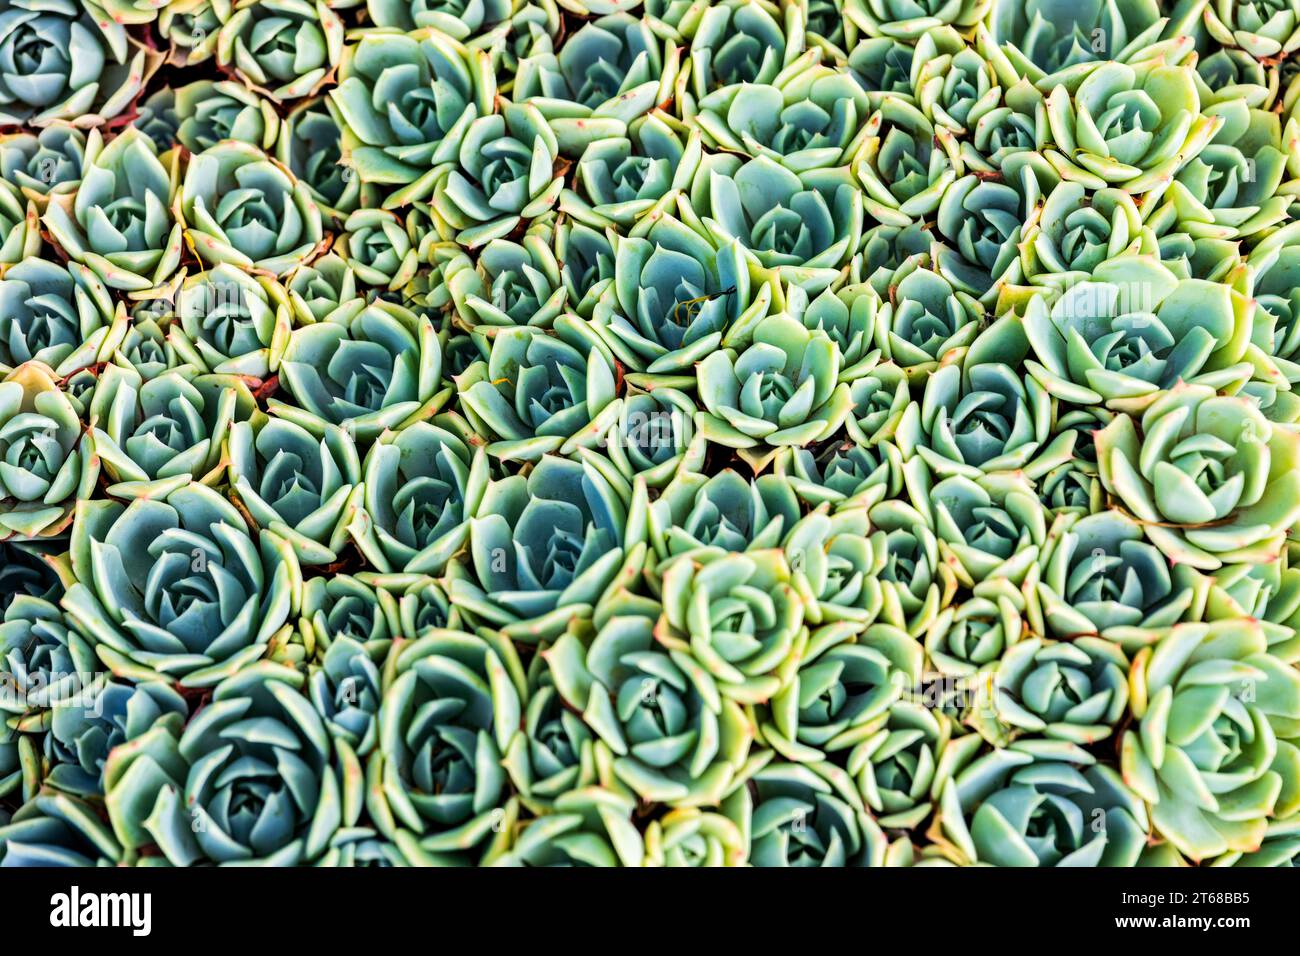 Rose Pearl echeveria. Echeveria est un grand genre de plantes à fleurs de la famille des Crassulaceae, originaire des zones semi-désertiques d'Amérique centrale, mexicaines Banque D'Images